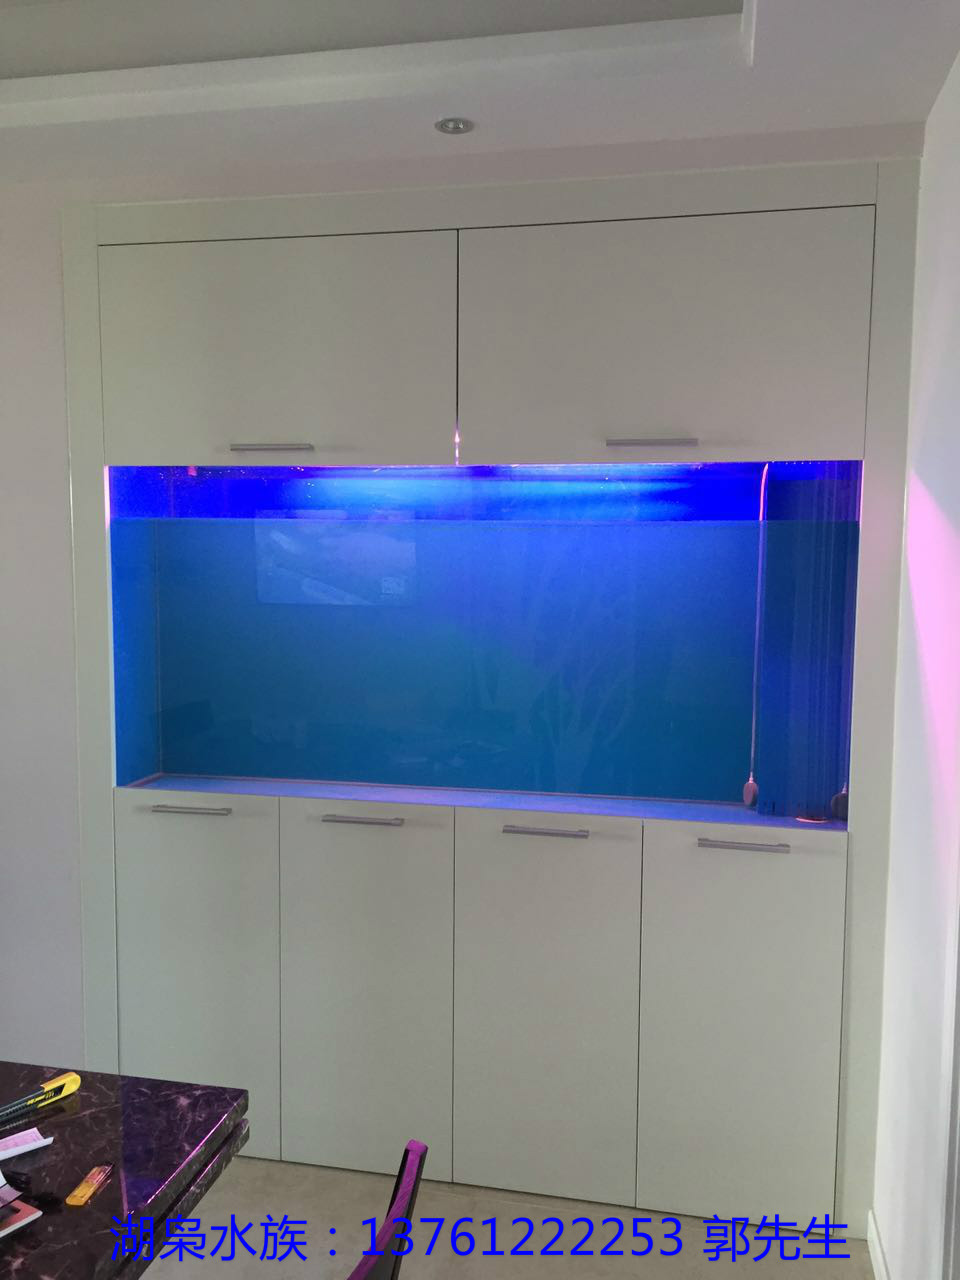 苏州玻璃鱼缸厂家价格 玻璃鱼缸厂家批发 玻璃鱼缸供应商